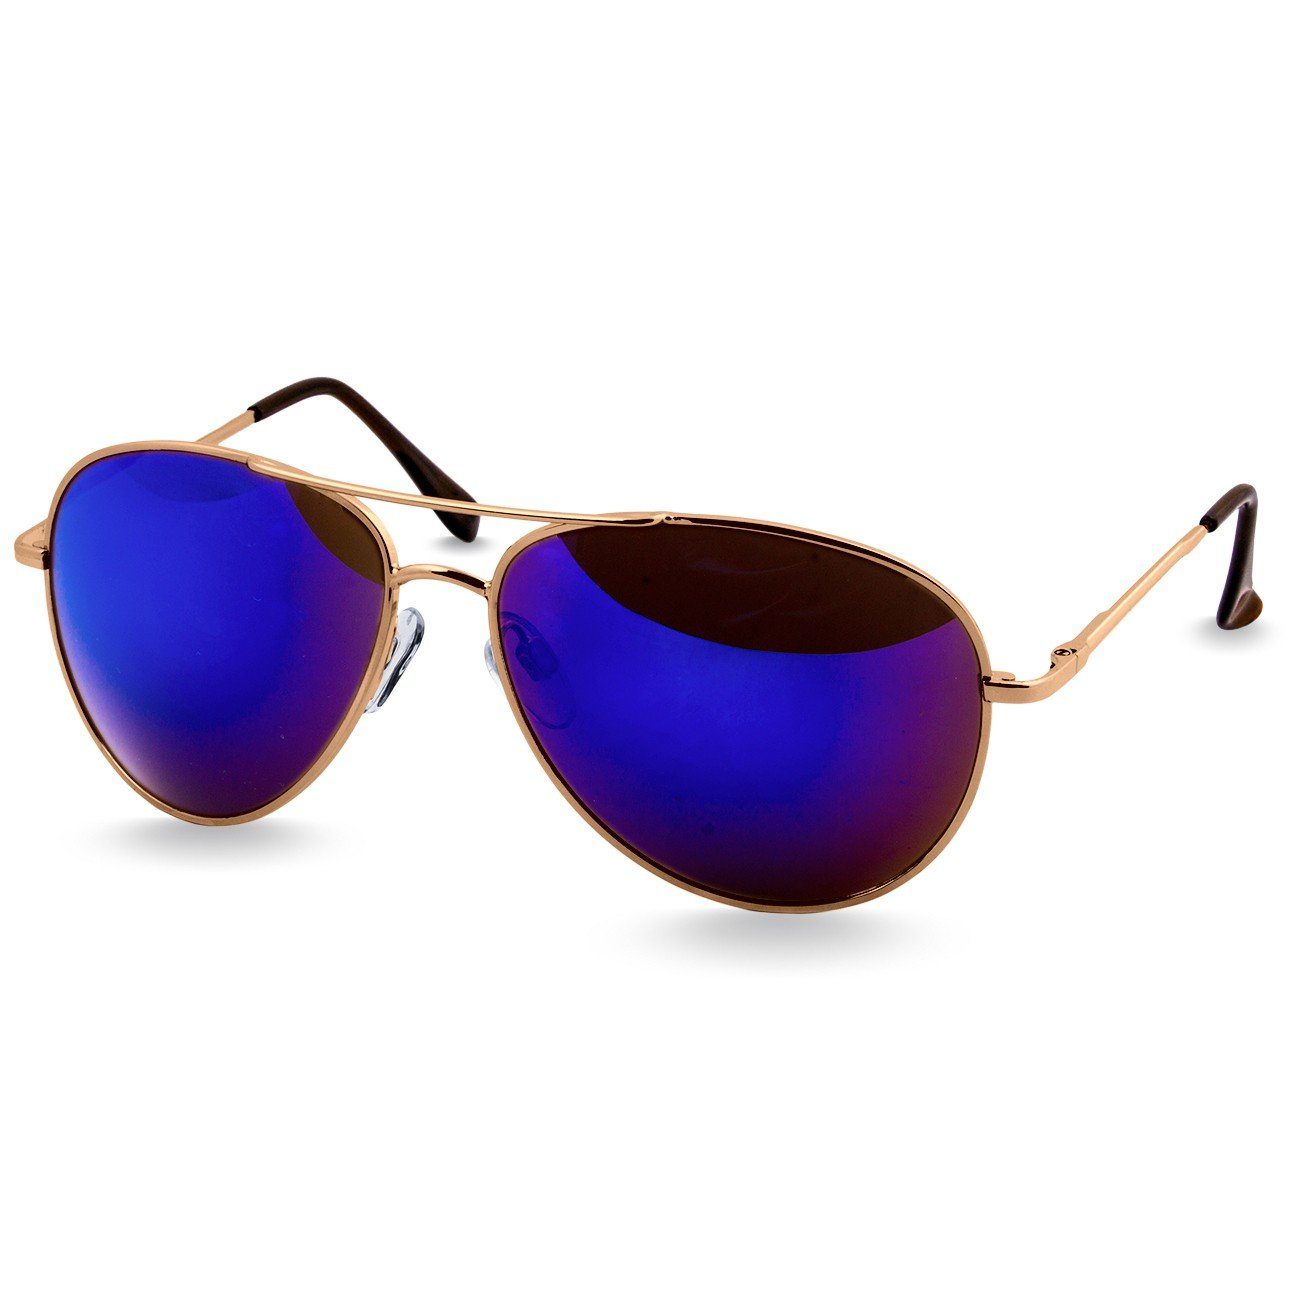 Caspar Sonnenbrille SG013 klassische Unisex Retro Pilotenbrille gold / blau verspiegelt